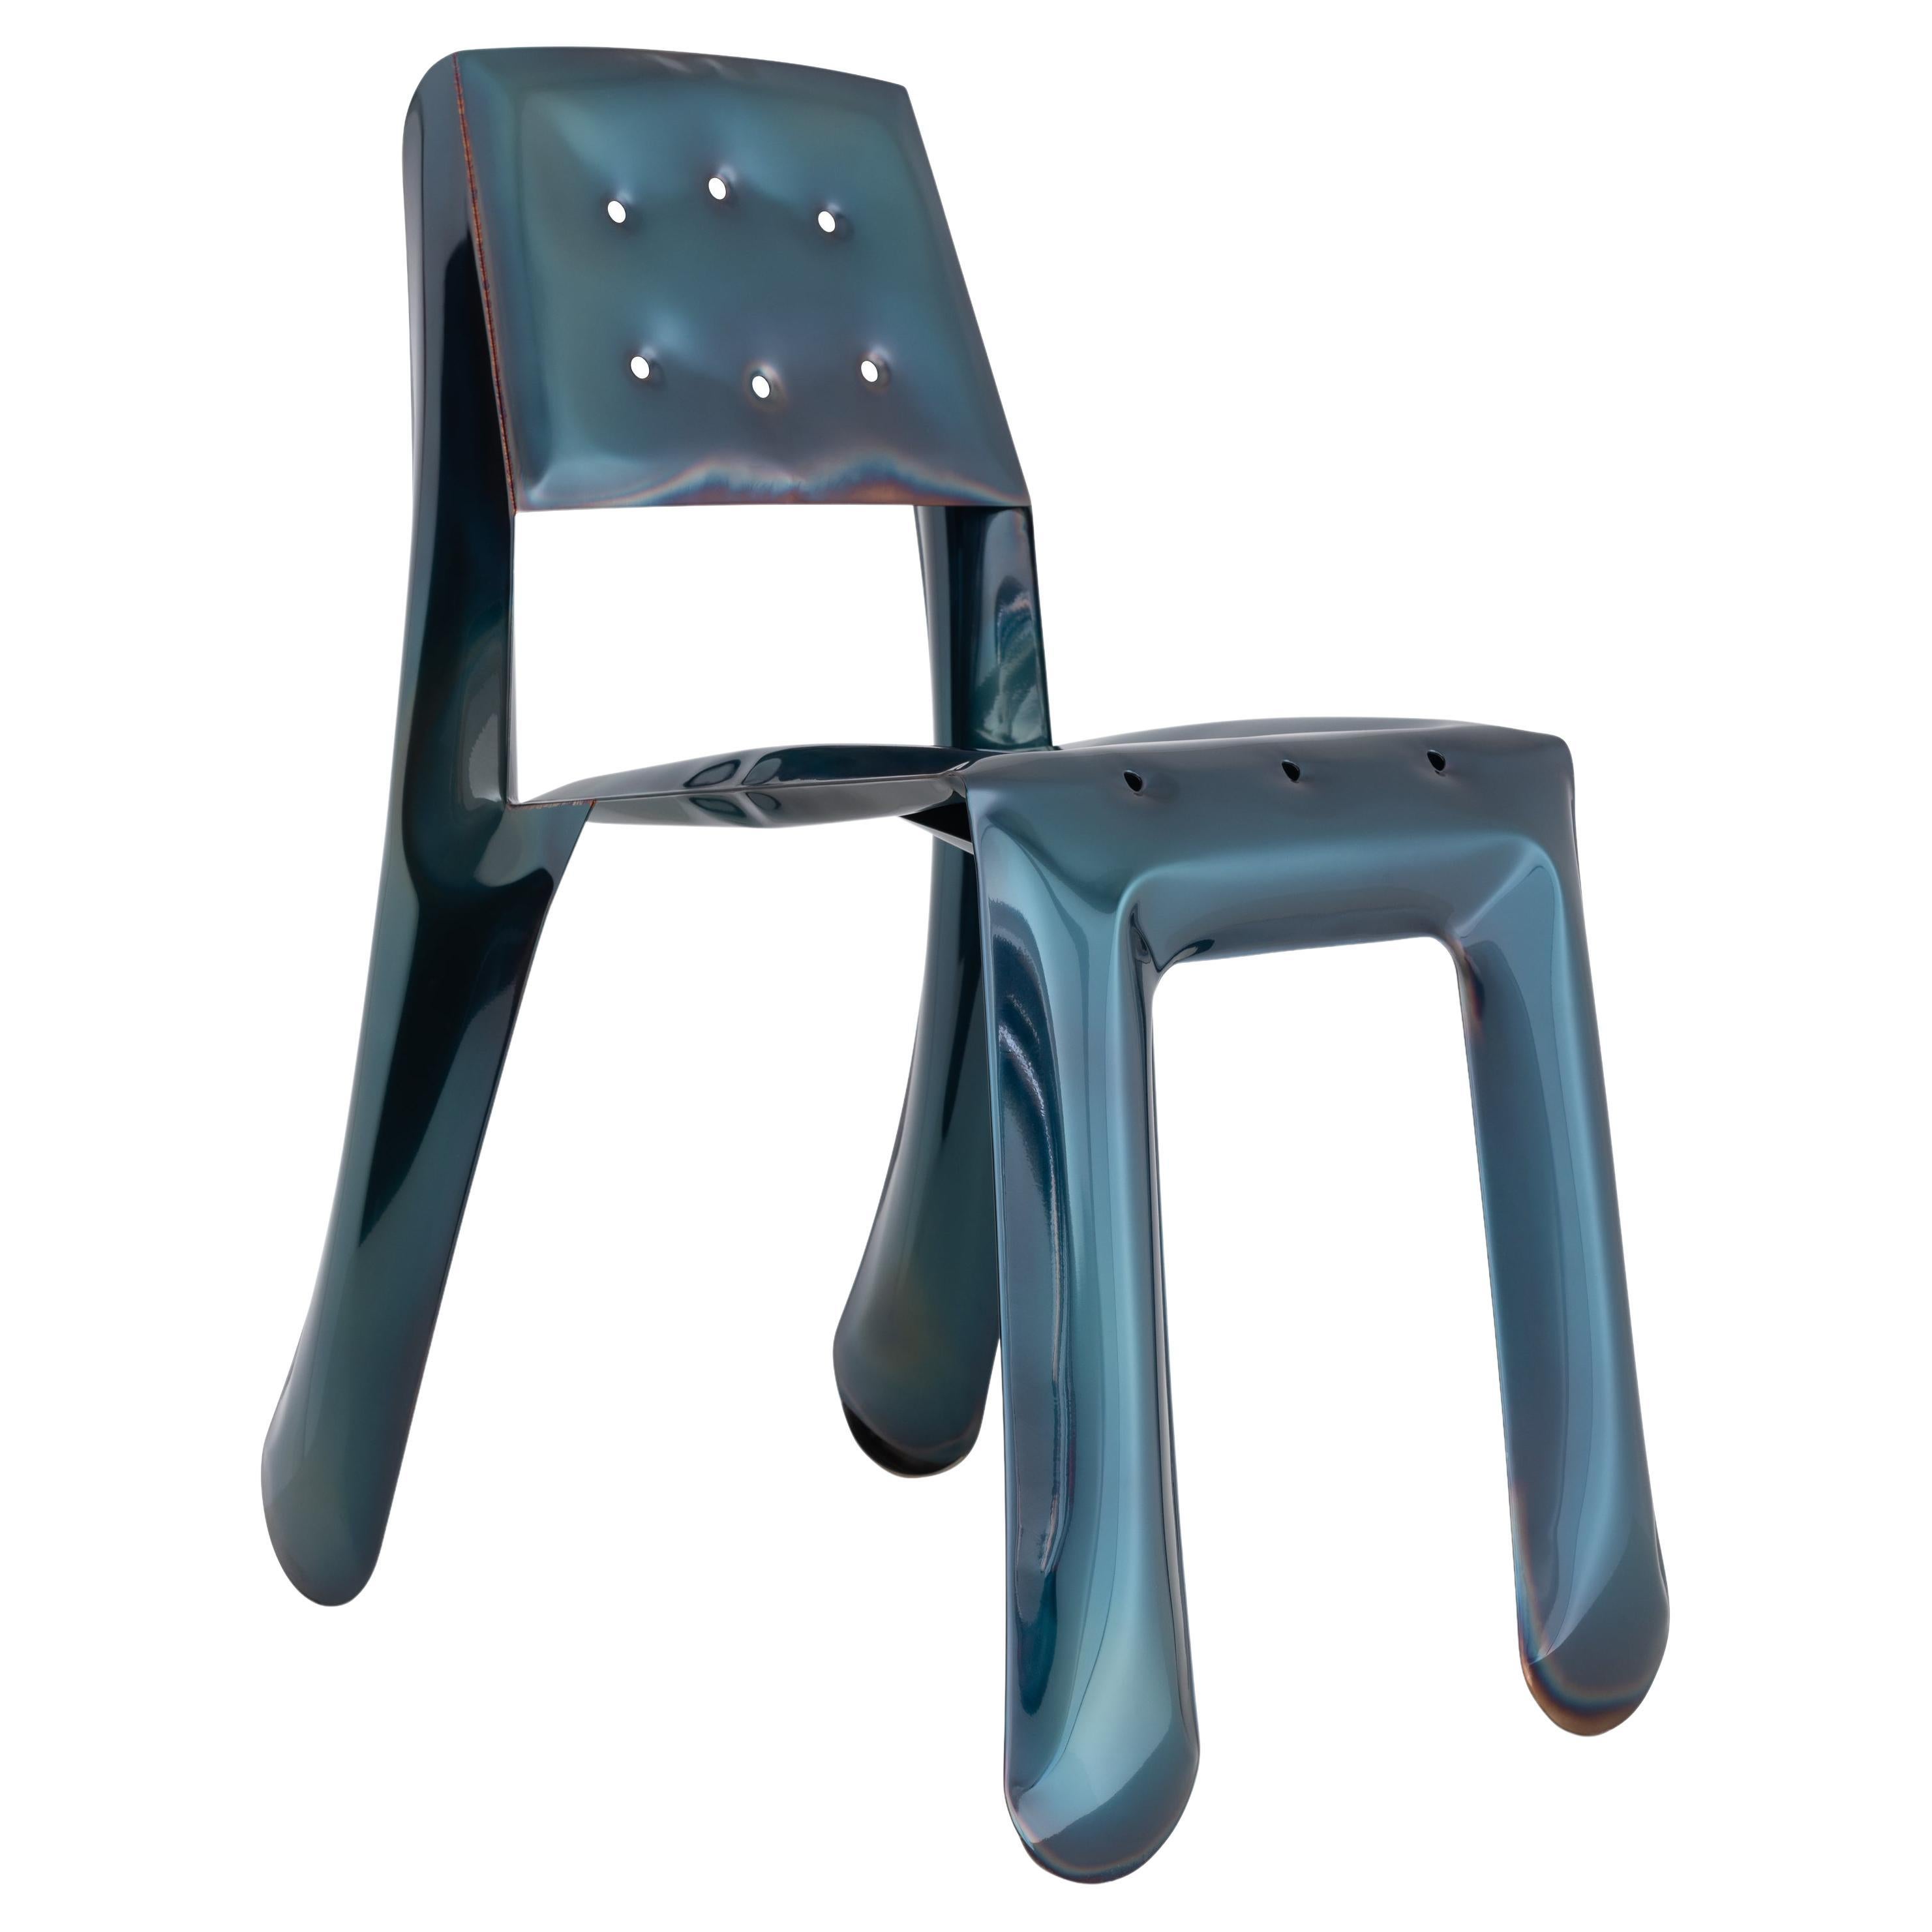 Cosmic Blue Chippensteel 0.5 Sculptural Chair by Zieta